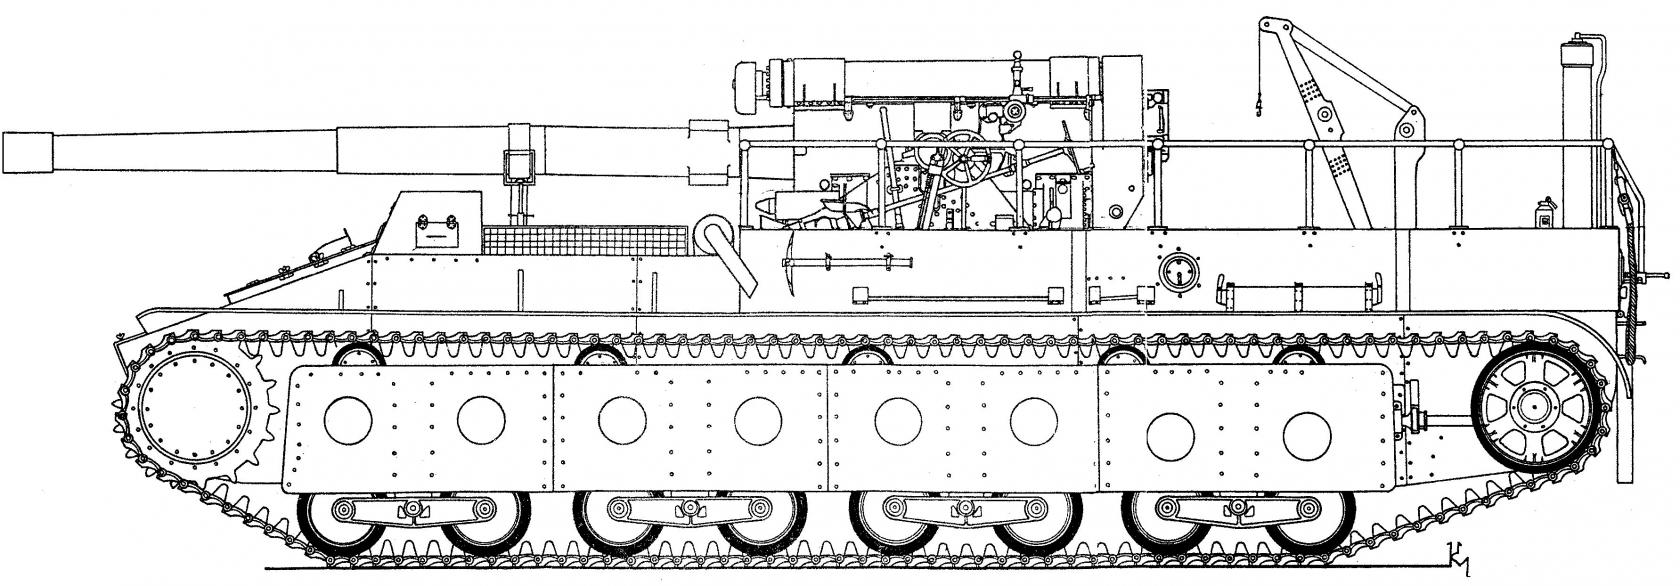 Самоходная артиллерийская установка Су-14. СССР